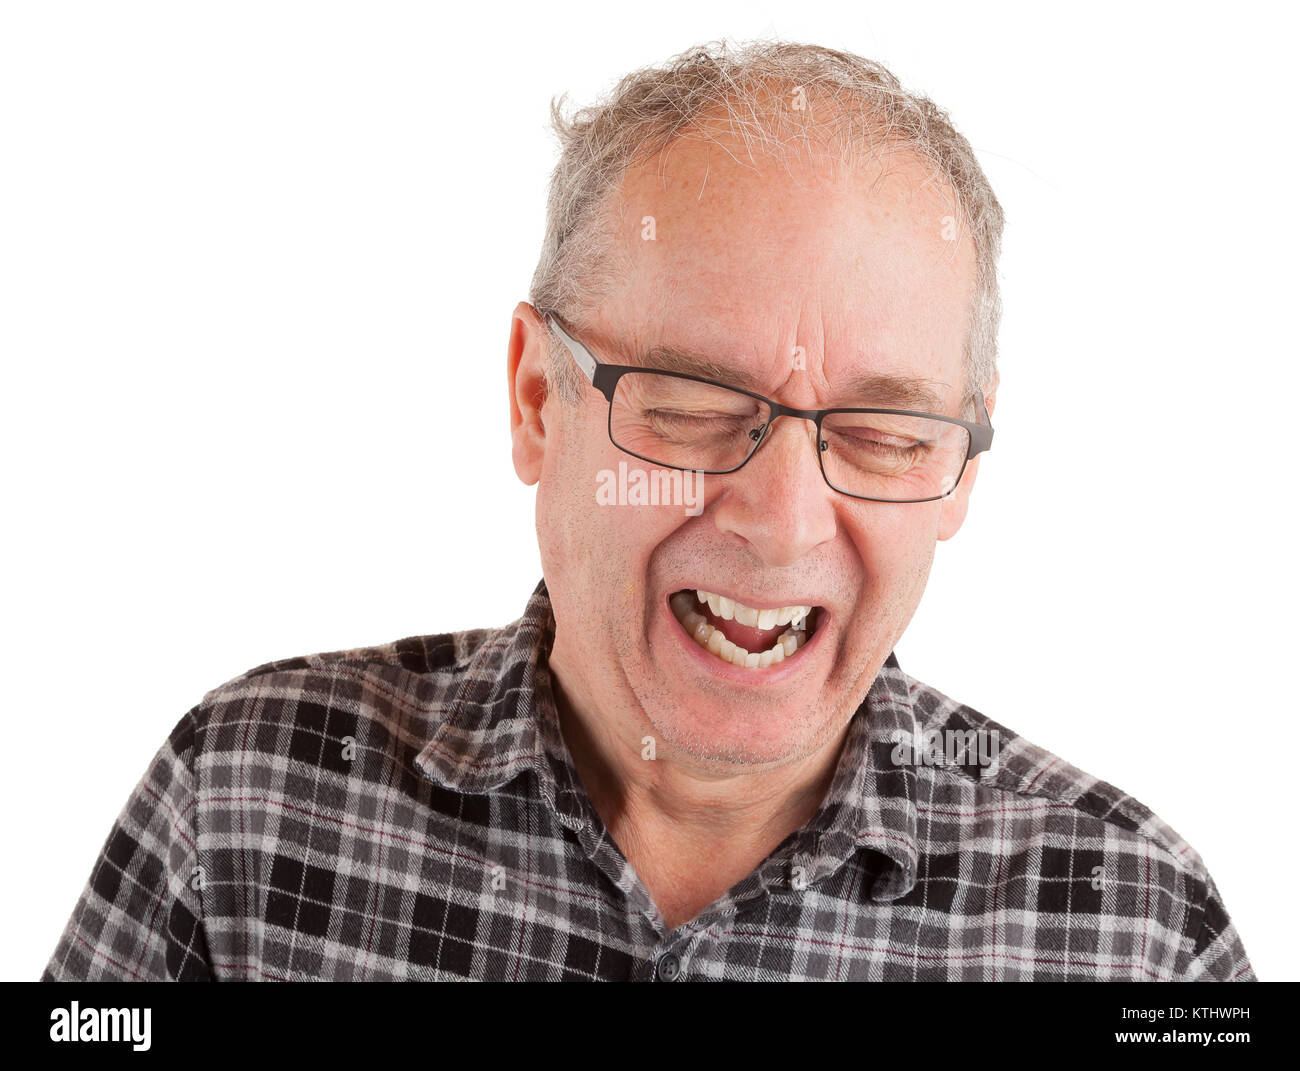 El hombre riendo hard Foto de stock